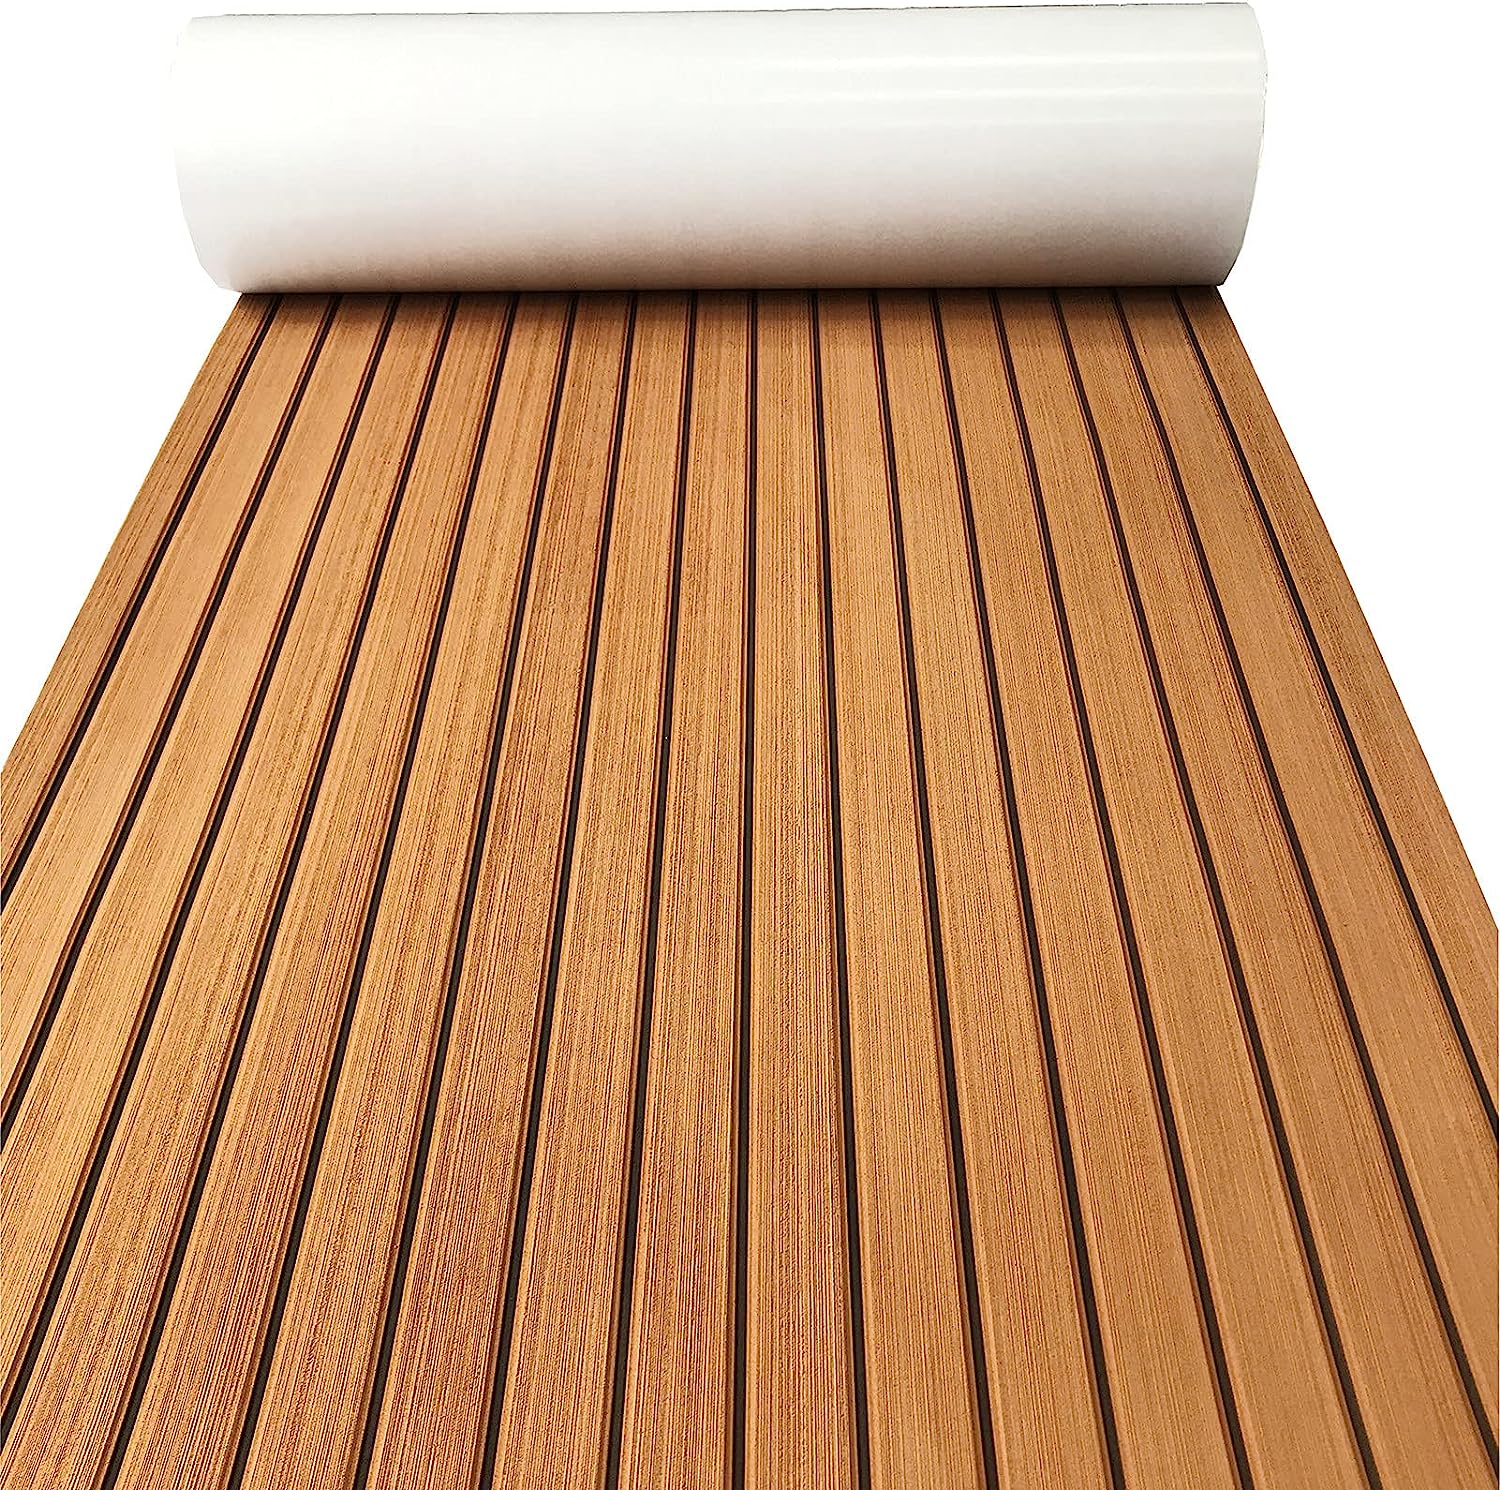 Boat Flooring Eva Foam Decking Sheet Faux Teak Marine Mat Marine Carpet Cooler Tops Seating Non-slip Self-adhesive Flooring For Motorboat RV Yacht Kayak Swim Platform 94"x44"/35"/23"/16" By PAIDU